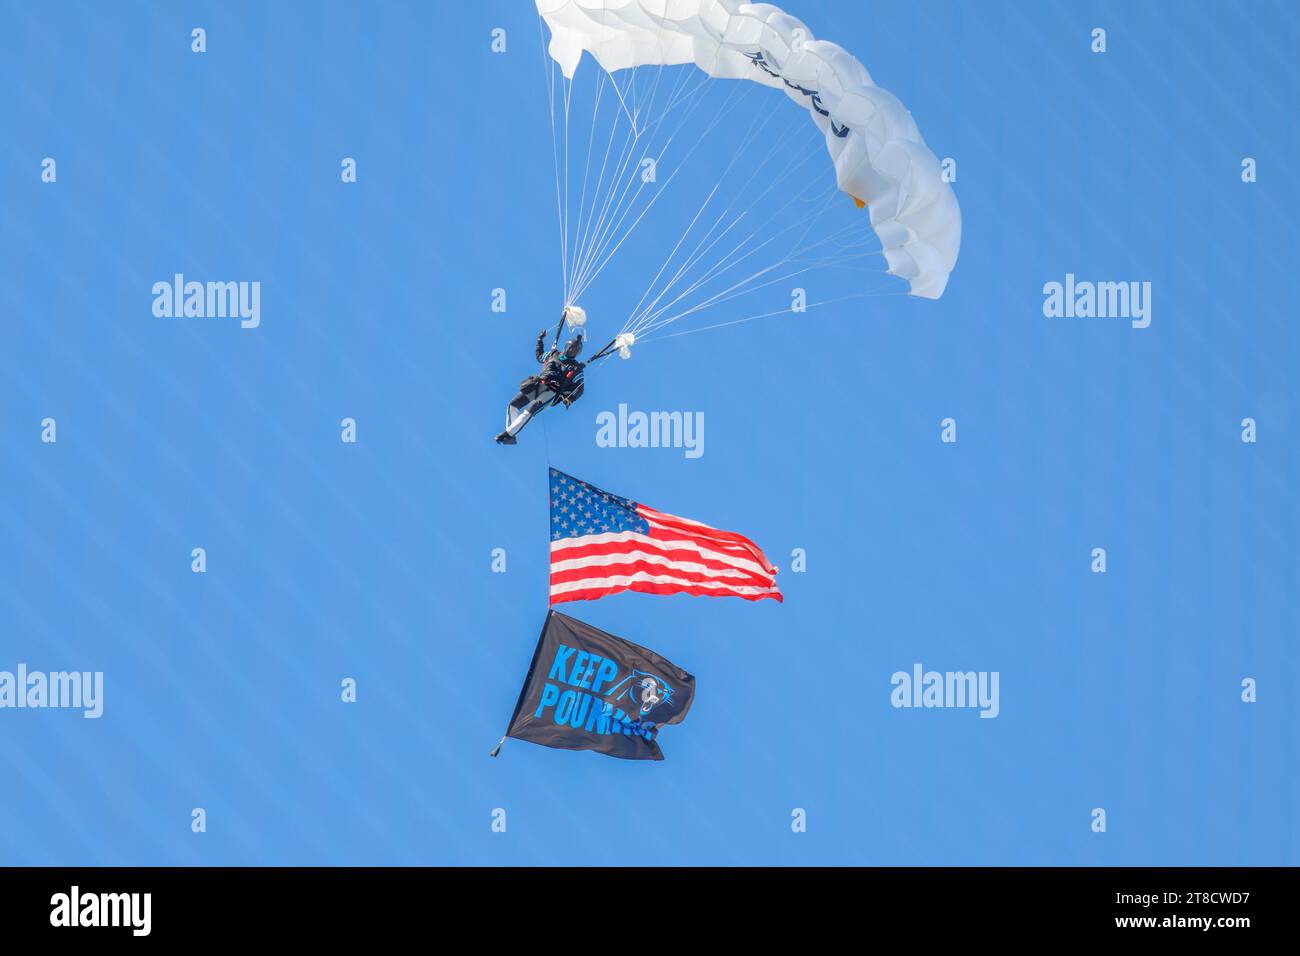 Charlotte, NC USA: Una visione generale di un paracadutista che paracadutizza sul campo prima di una partita NFL tra i Carolina Panthers e i Dallas Cowboys Foto Stock